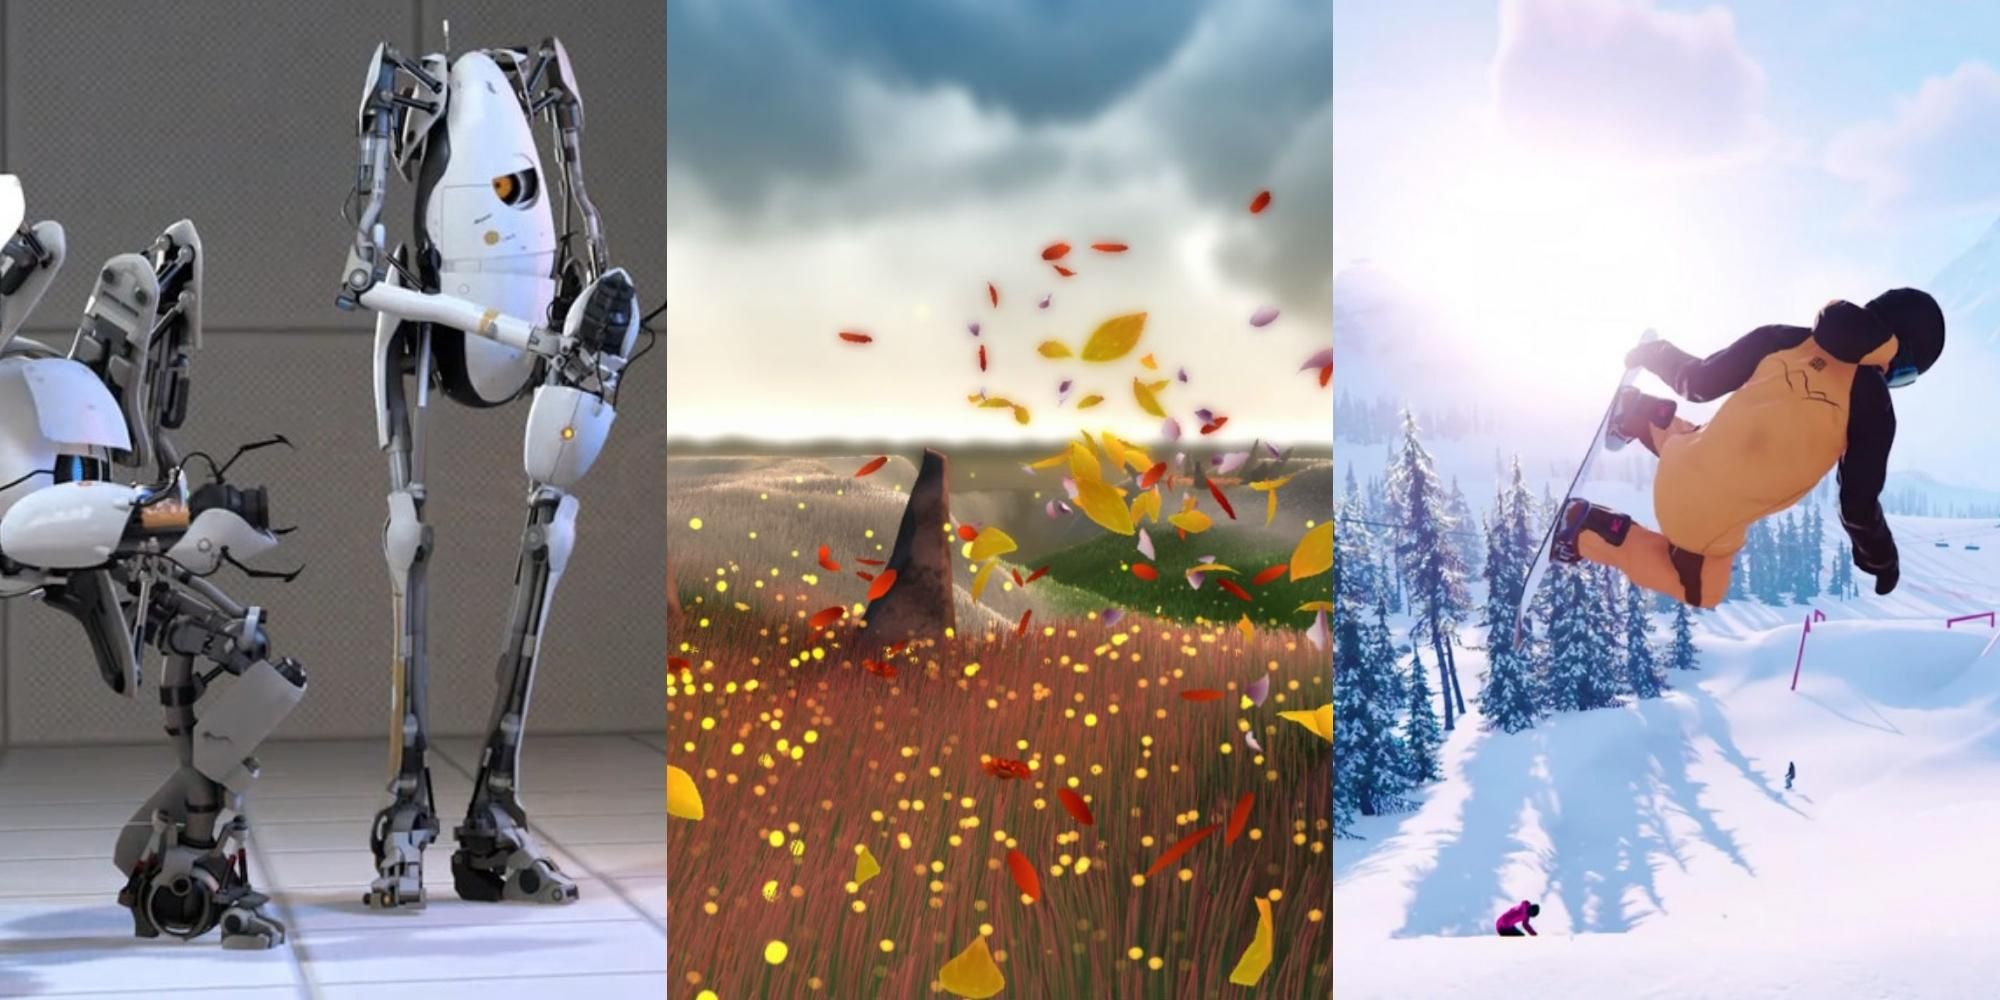 robots in Portal 2, field in Flower, snowboarder in Carve Snowboarding